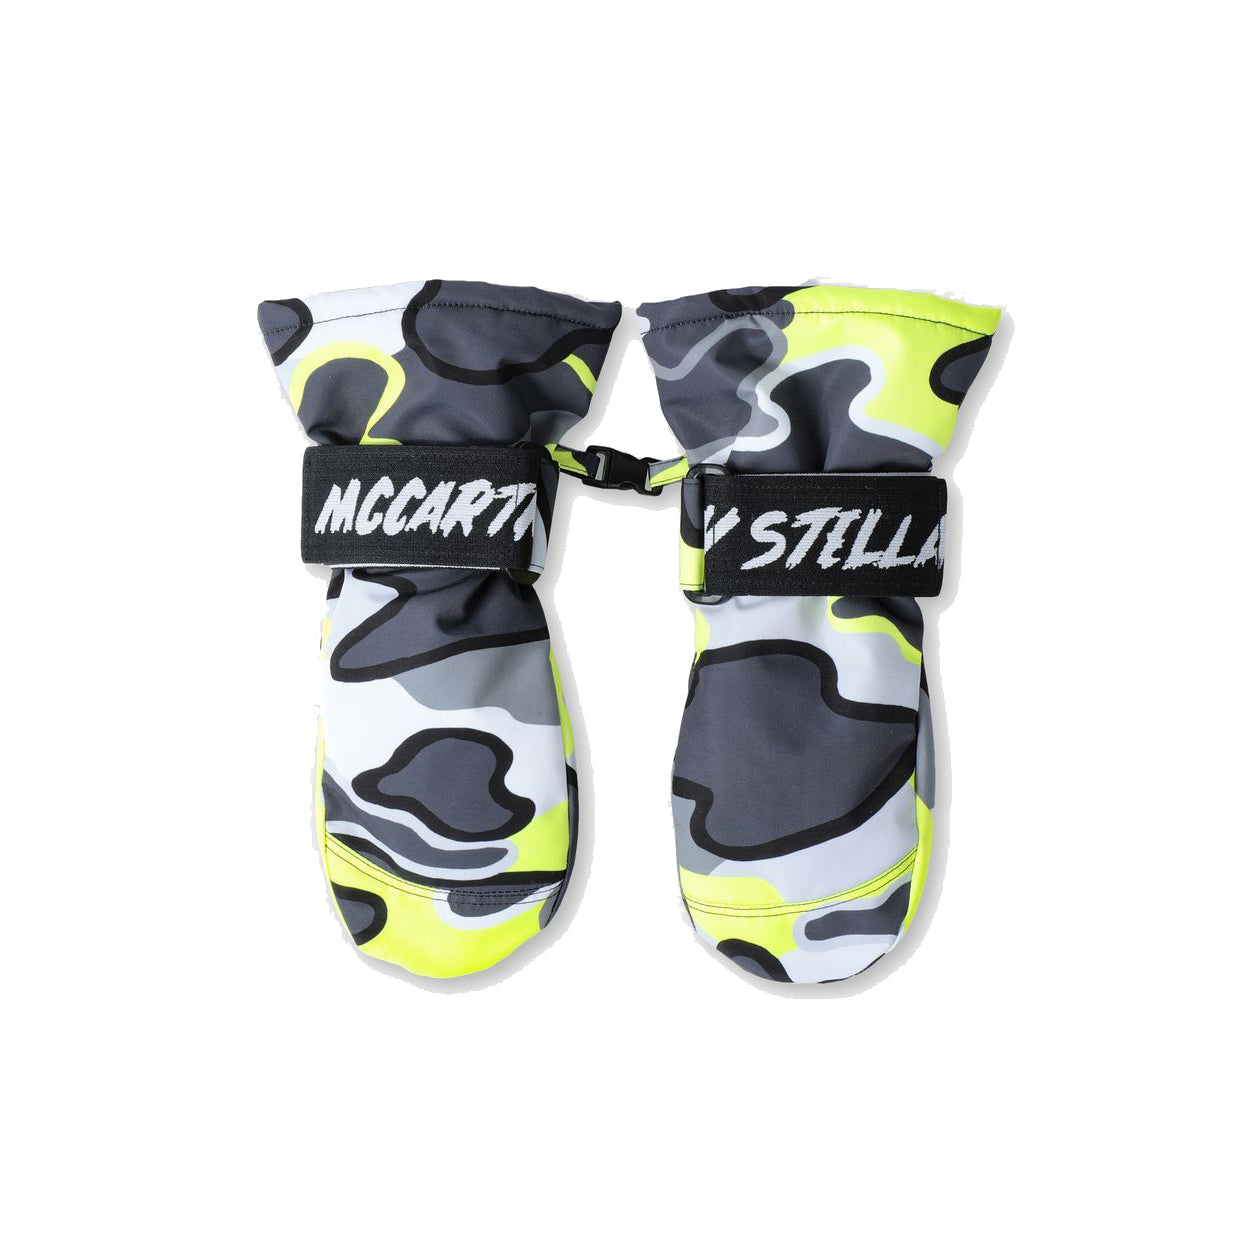 Fluro Camo Ski Gloves